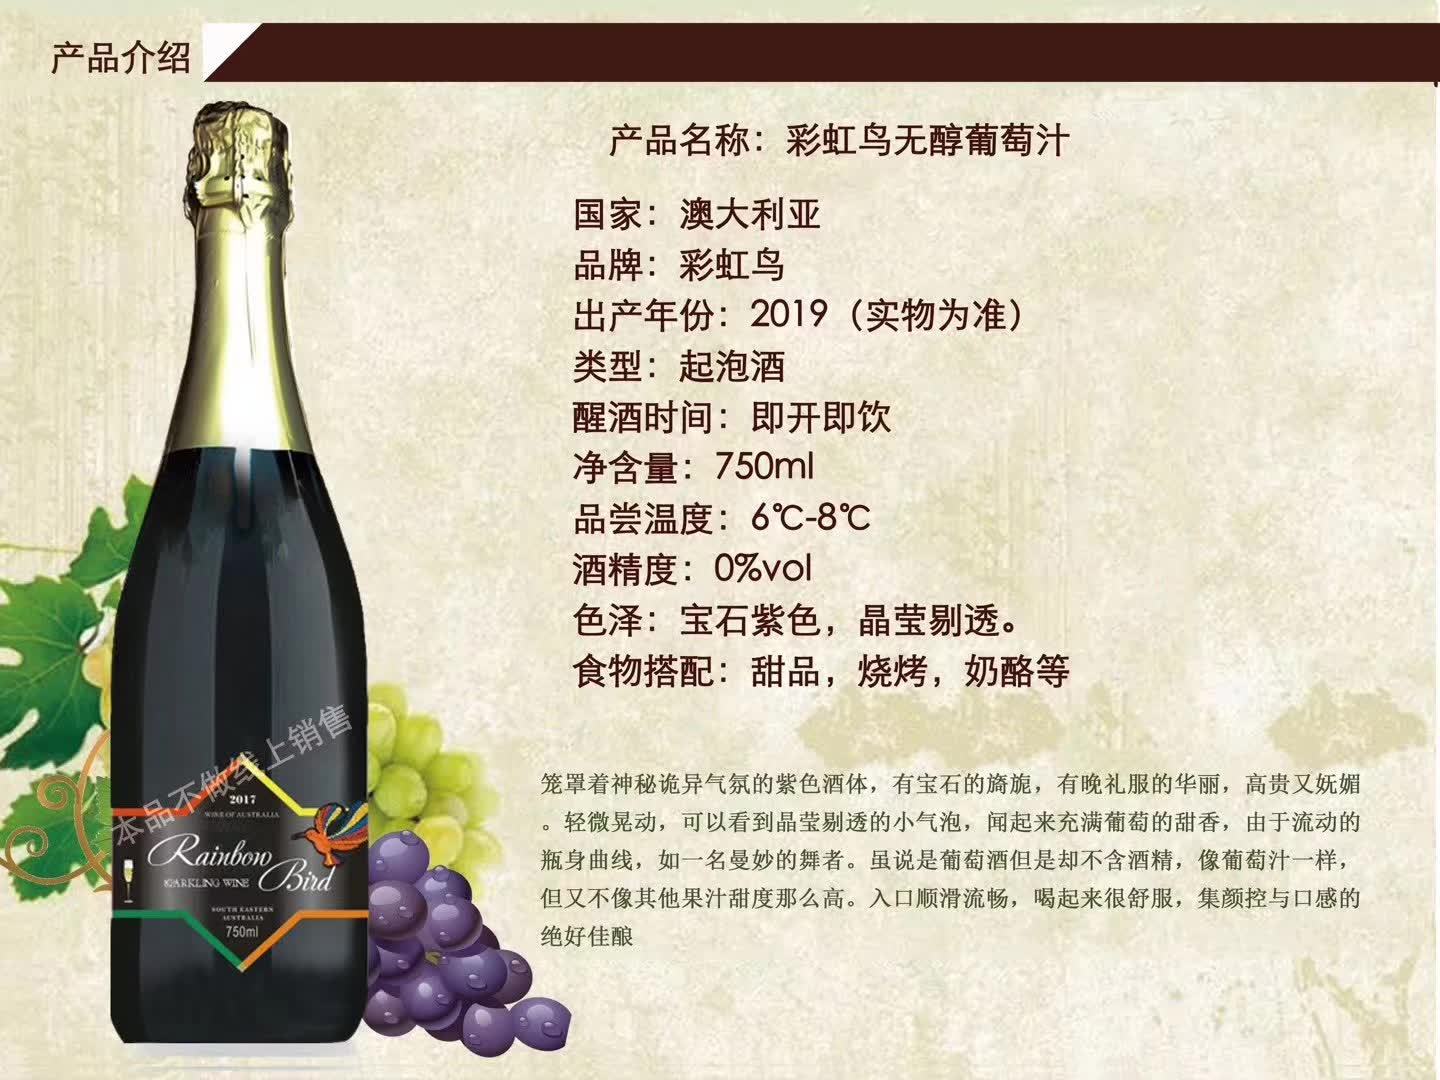 上海万耀南澳酒庄直供进口彩虹鸟系列无醇葡萄汁无度数葡萄汁诚招代理加盟